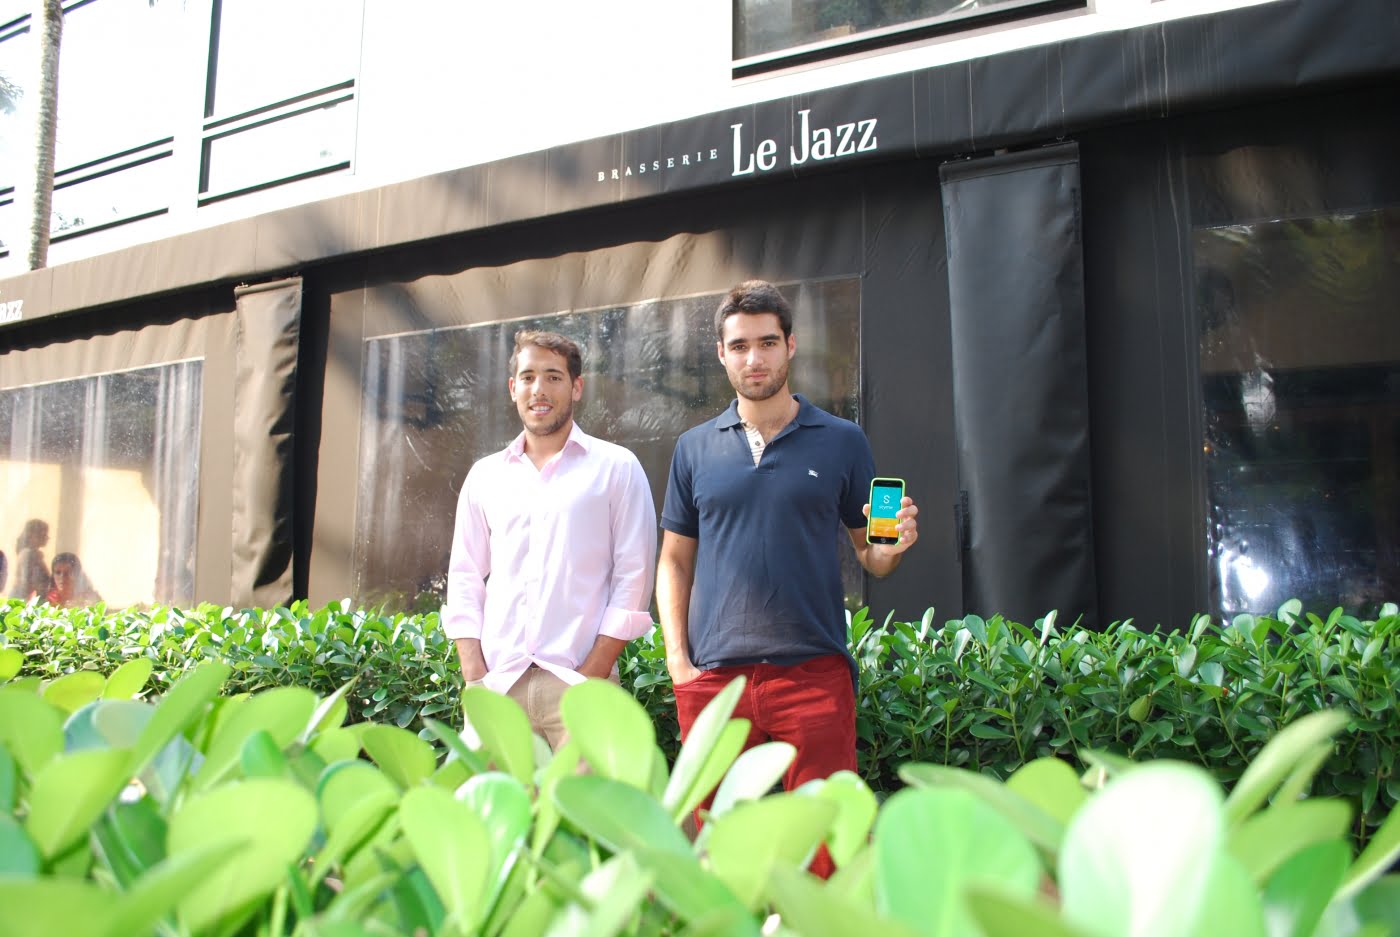 Vinicius e Thiago, os sócios fundadores da Styme, em frente ao Le Jazz (um dos restaurantes que usam o produto).